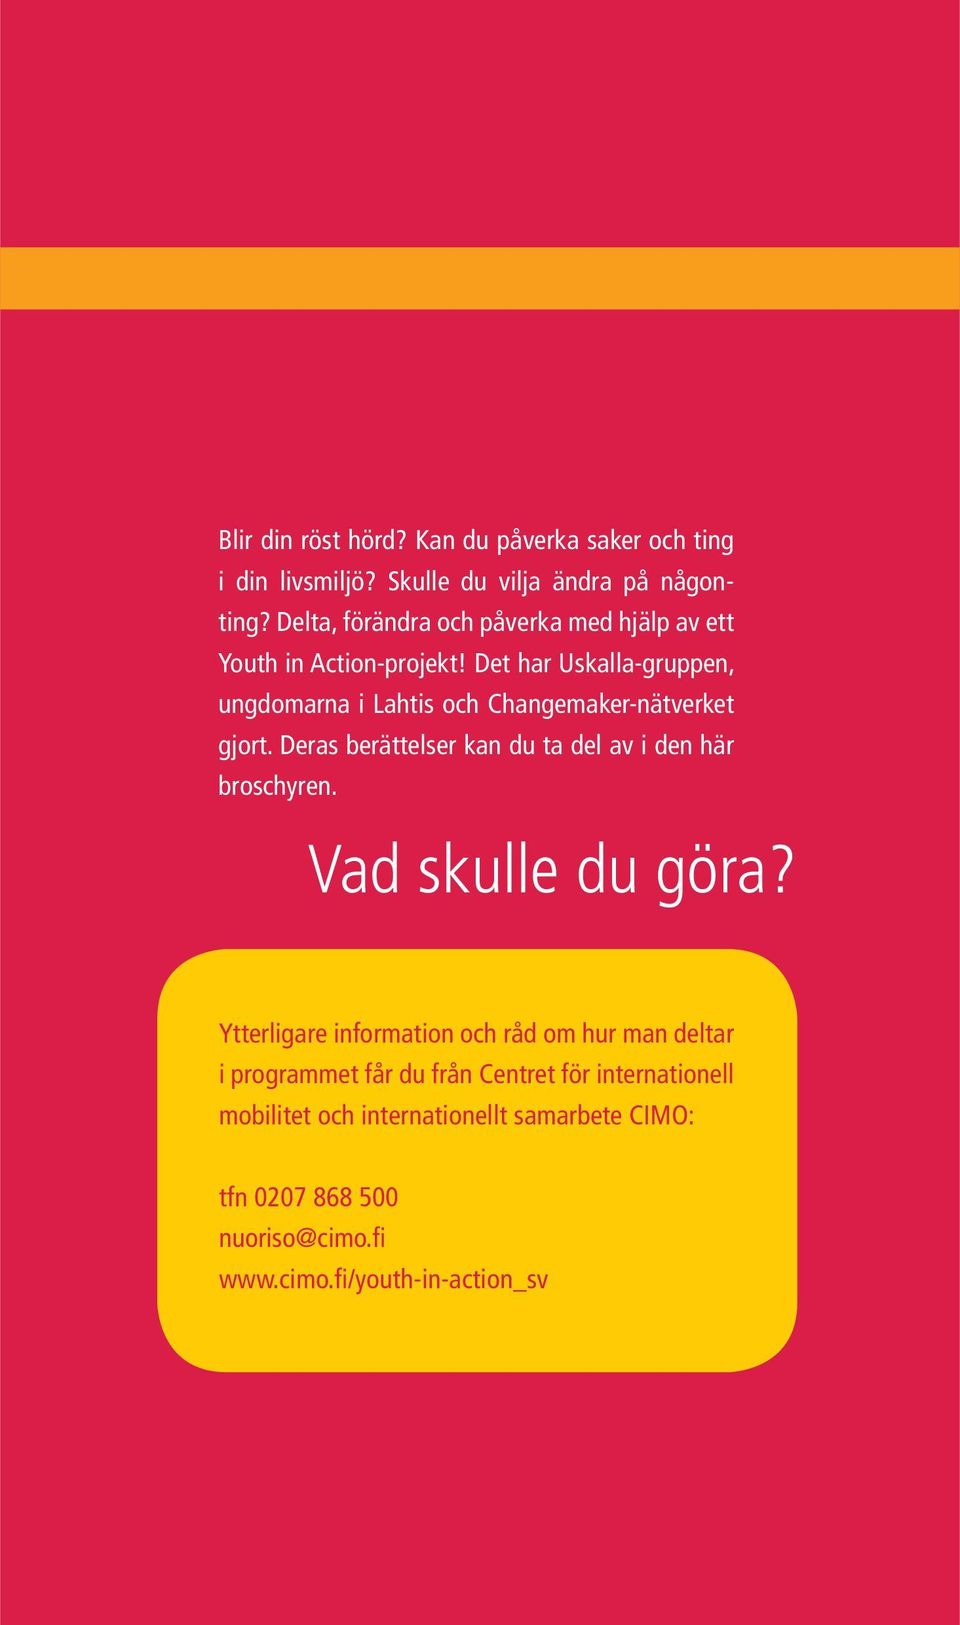 Det har Uskalla-gruppen, ungdomarna i Lahtis och Changemaker-nätverket gjort. Deras berättelser kan du ta del av i den här broschyren.